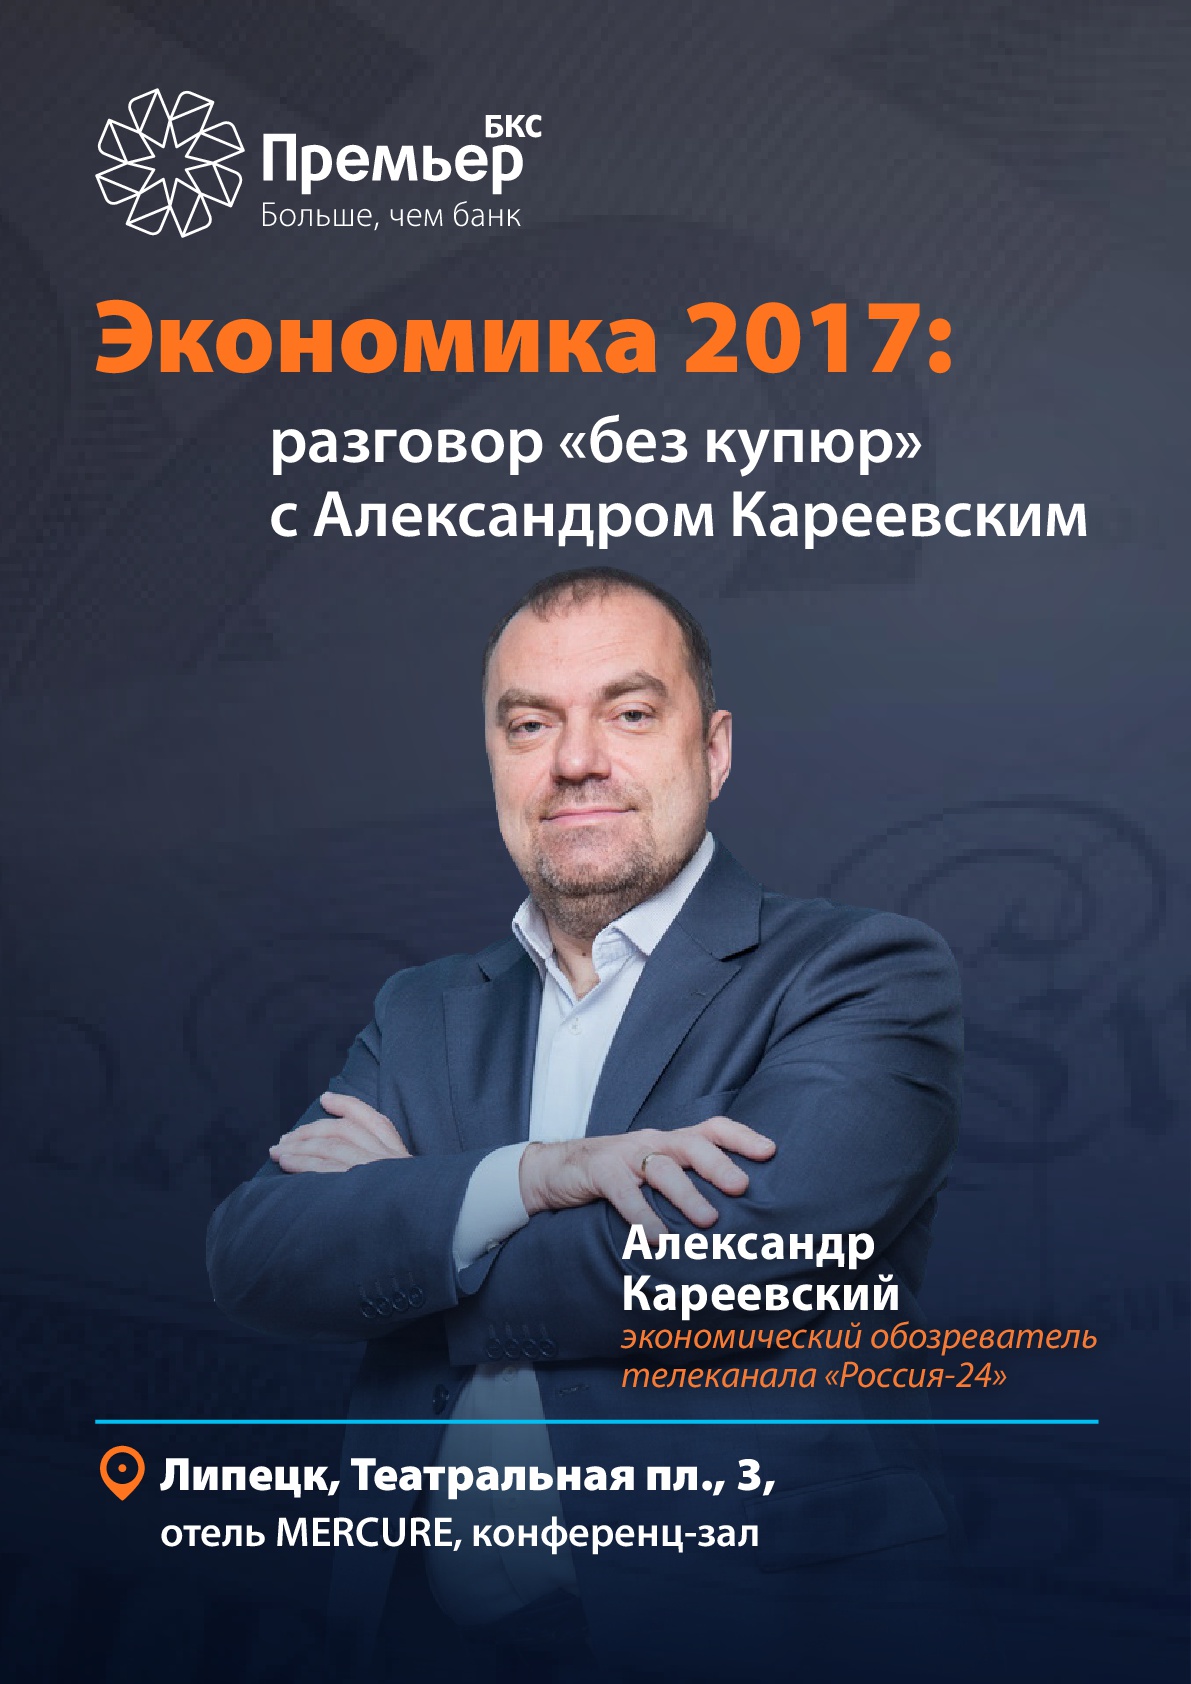 Знаменитый телеведущий «Россия 24» проведет в Липецке бизнес-конференцию